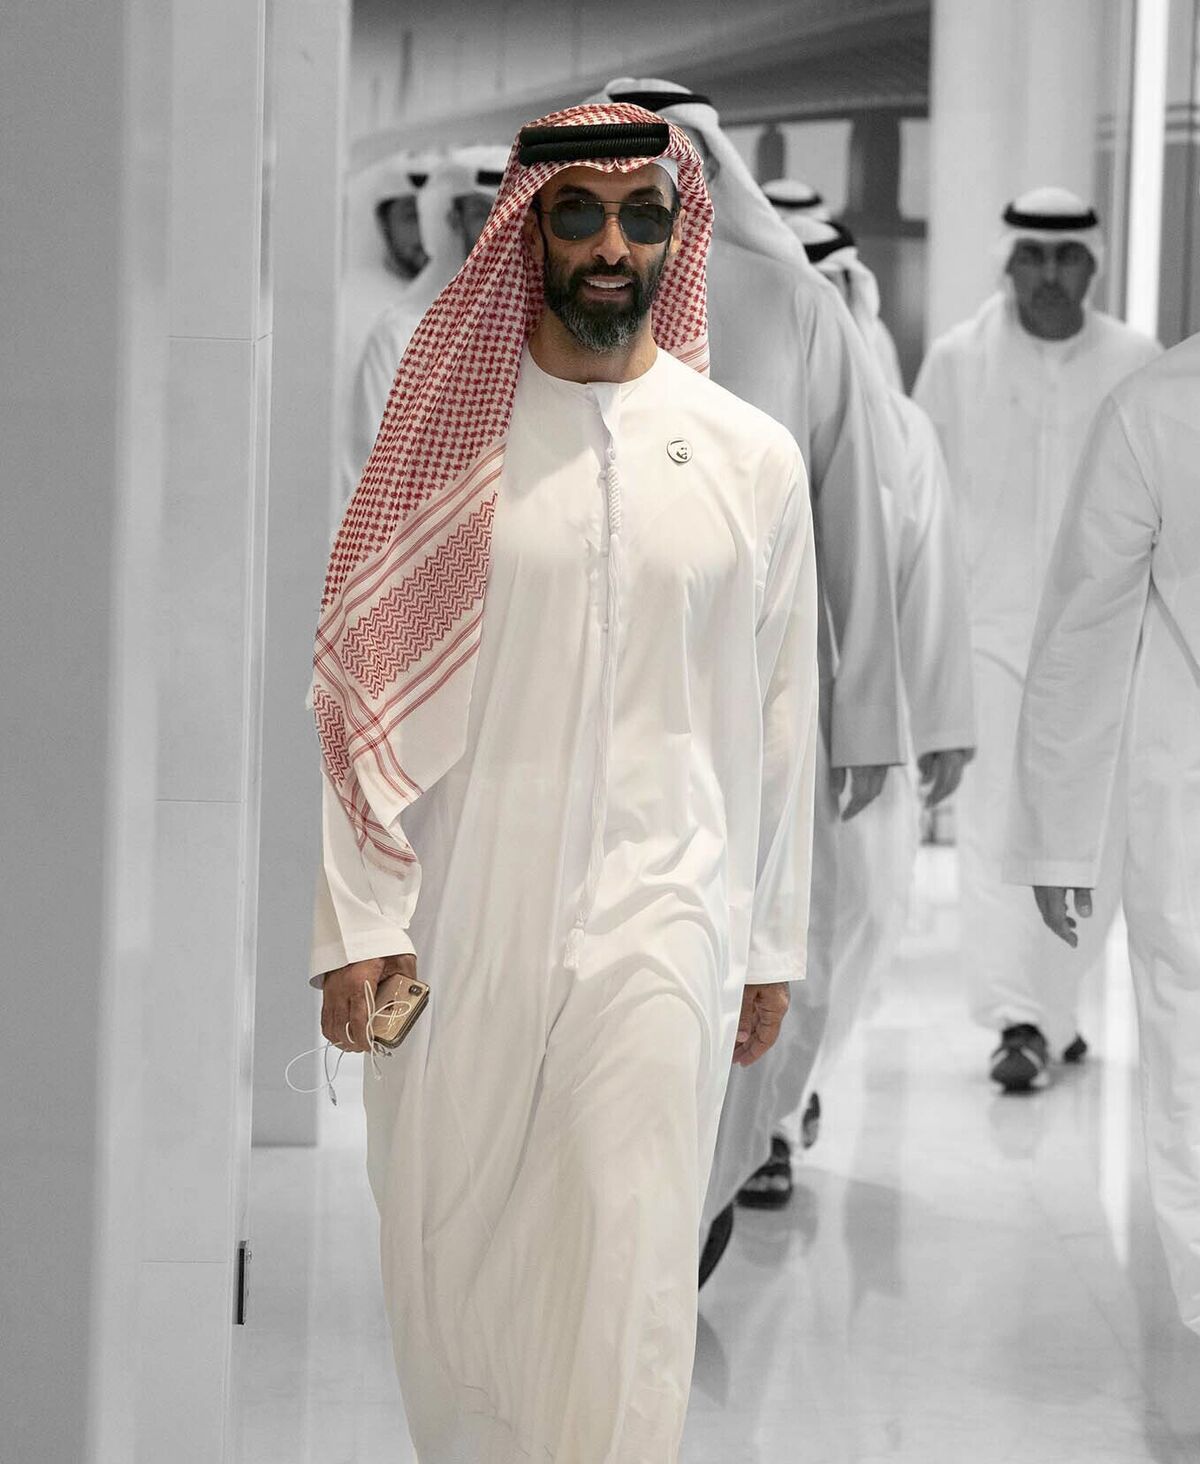 Sheikh Tanun bin Zayed Al Nahyan